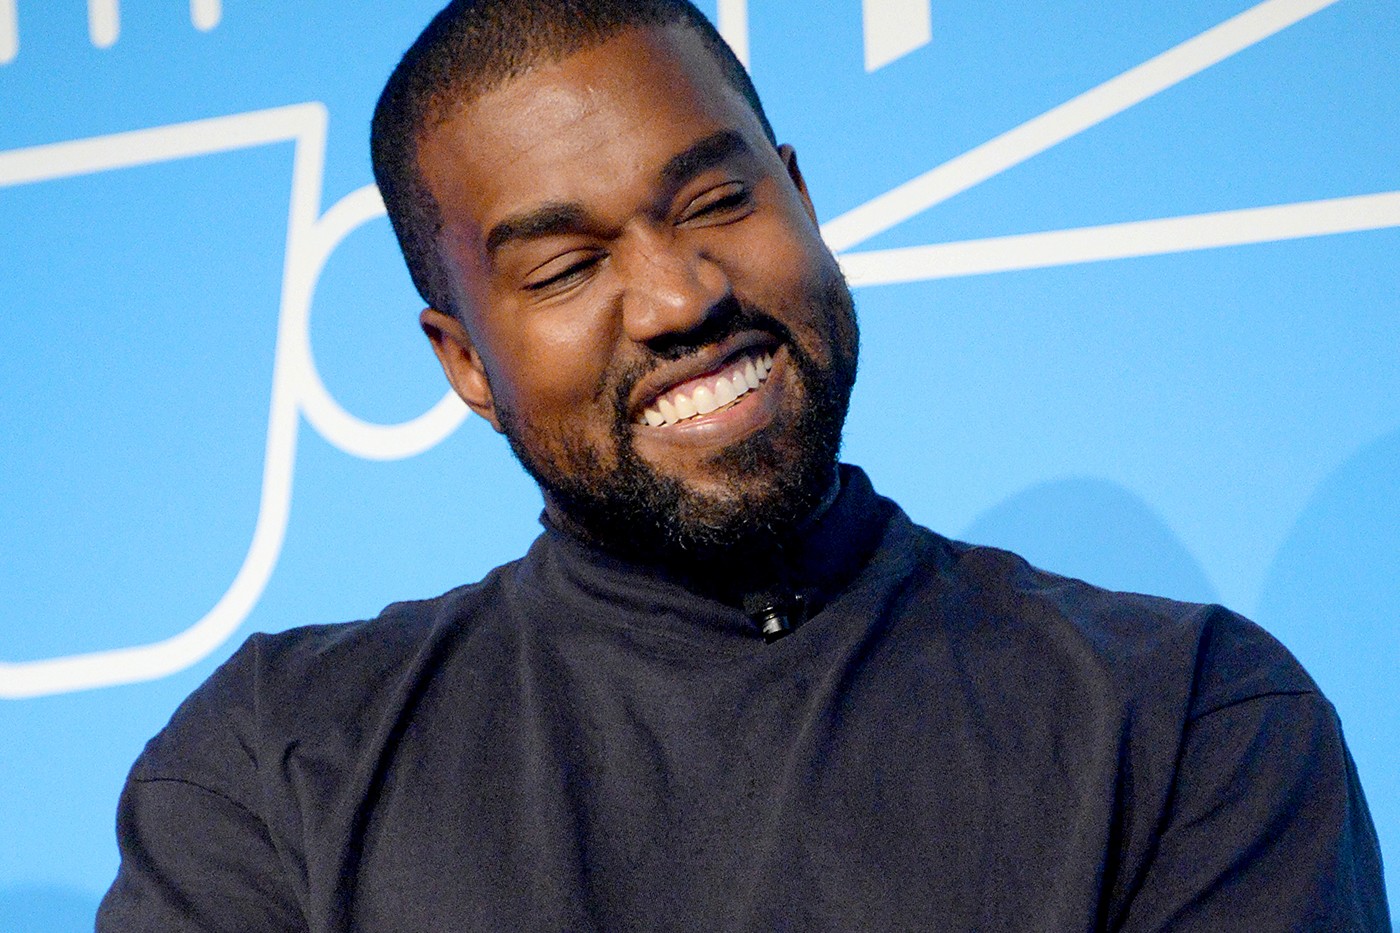 报导称 Kanye West 向法庭申请更名为「Ye」